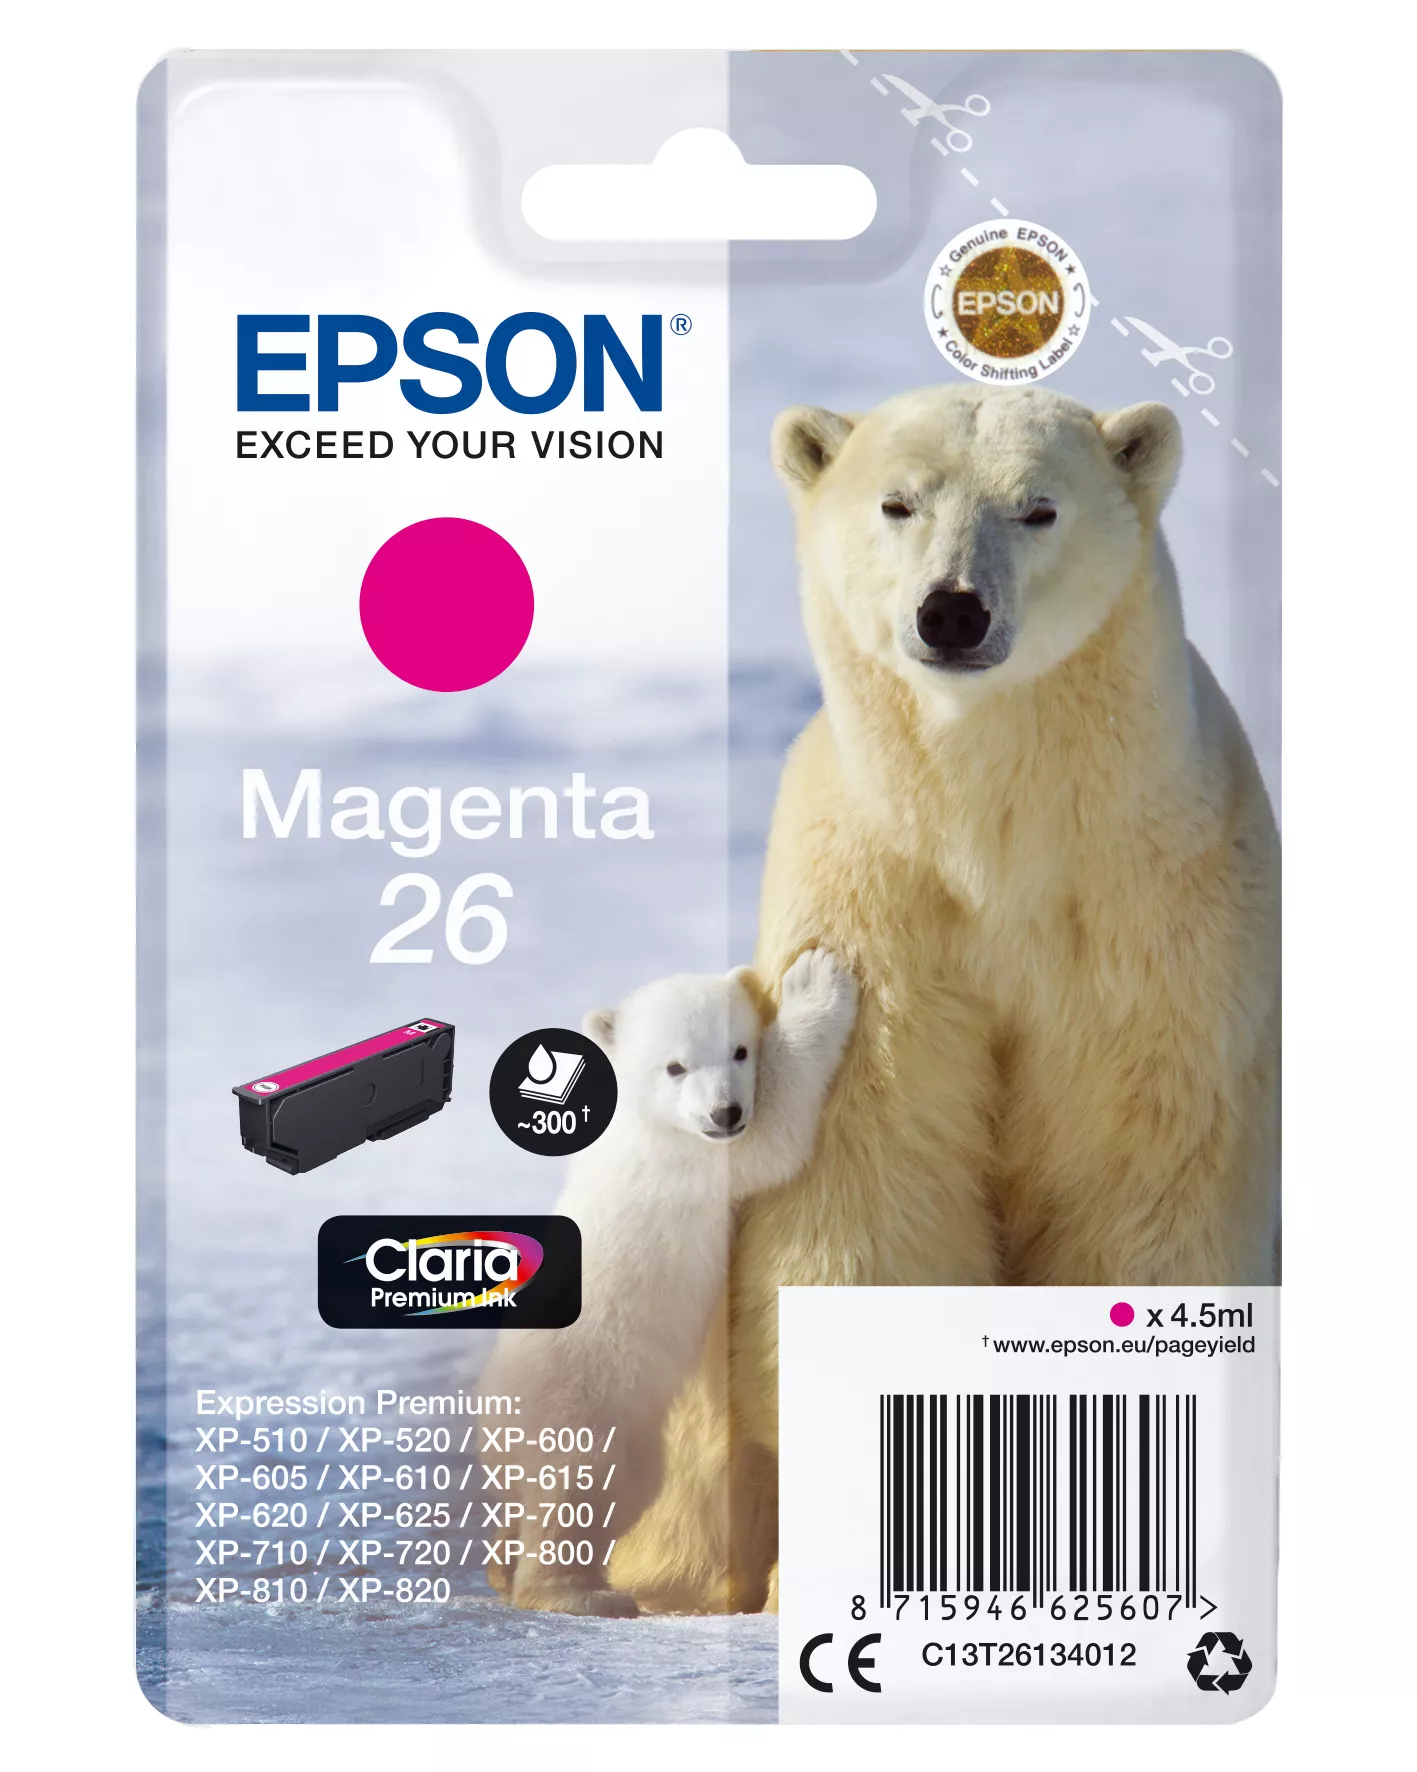 Achat EPSON 26 cartouche encre magenta capacité standard 4.5ml sur hello RSE